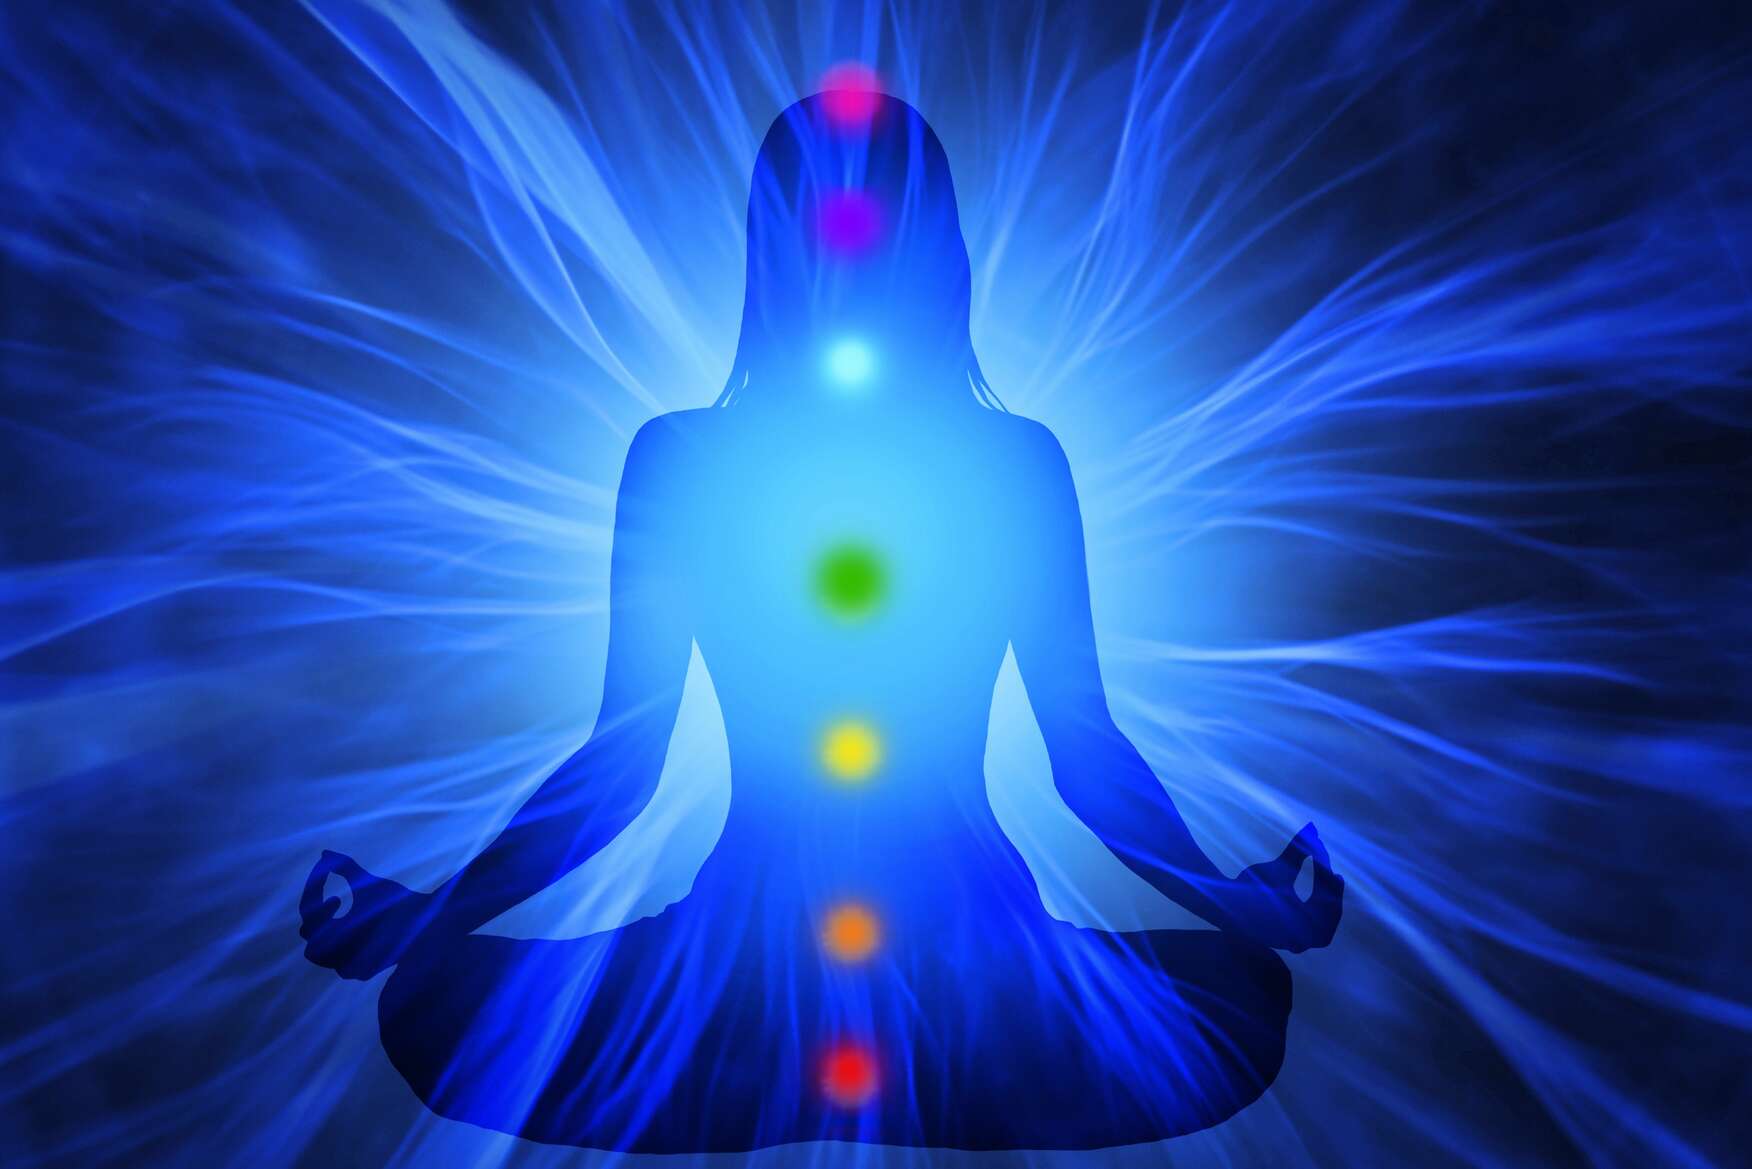 Медитация и визуализация: 3 практики для обретения внутреннего спокойствия и ясности